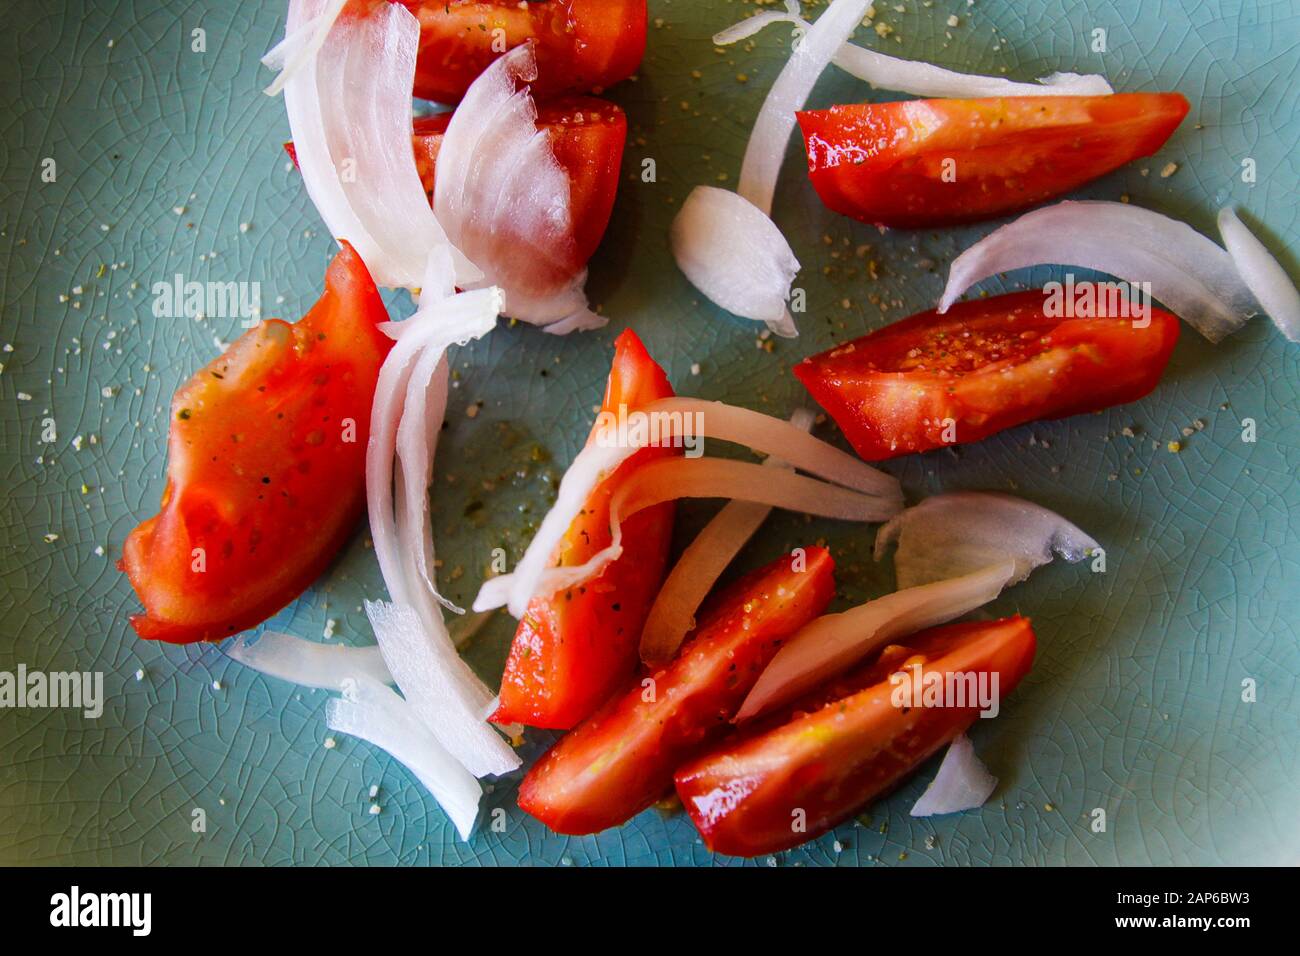 Hochwinkelige Draufsicht Nahaufnahme von frischen rohen roten Tomatenscheiben mit Zwiebeln, gewürzt mit Kräutersalz auf grünem Teller Stockfoto